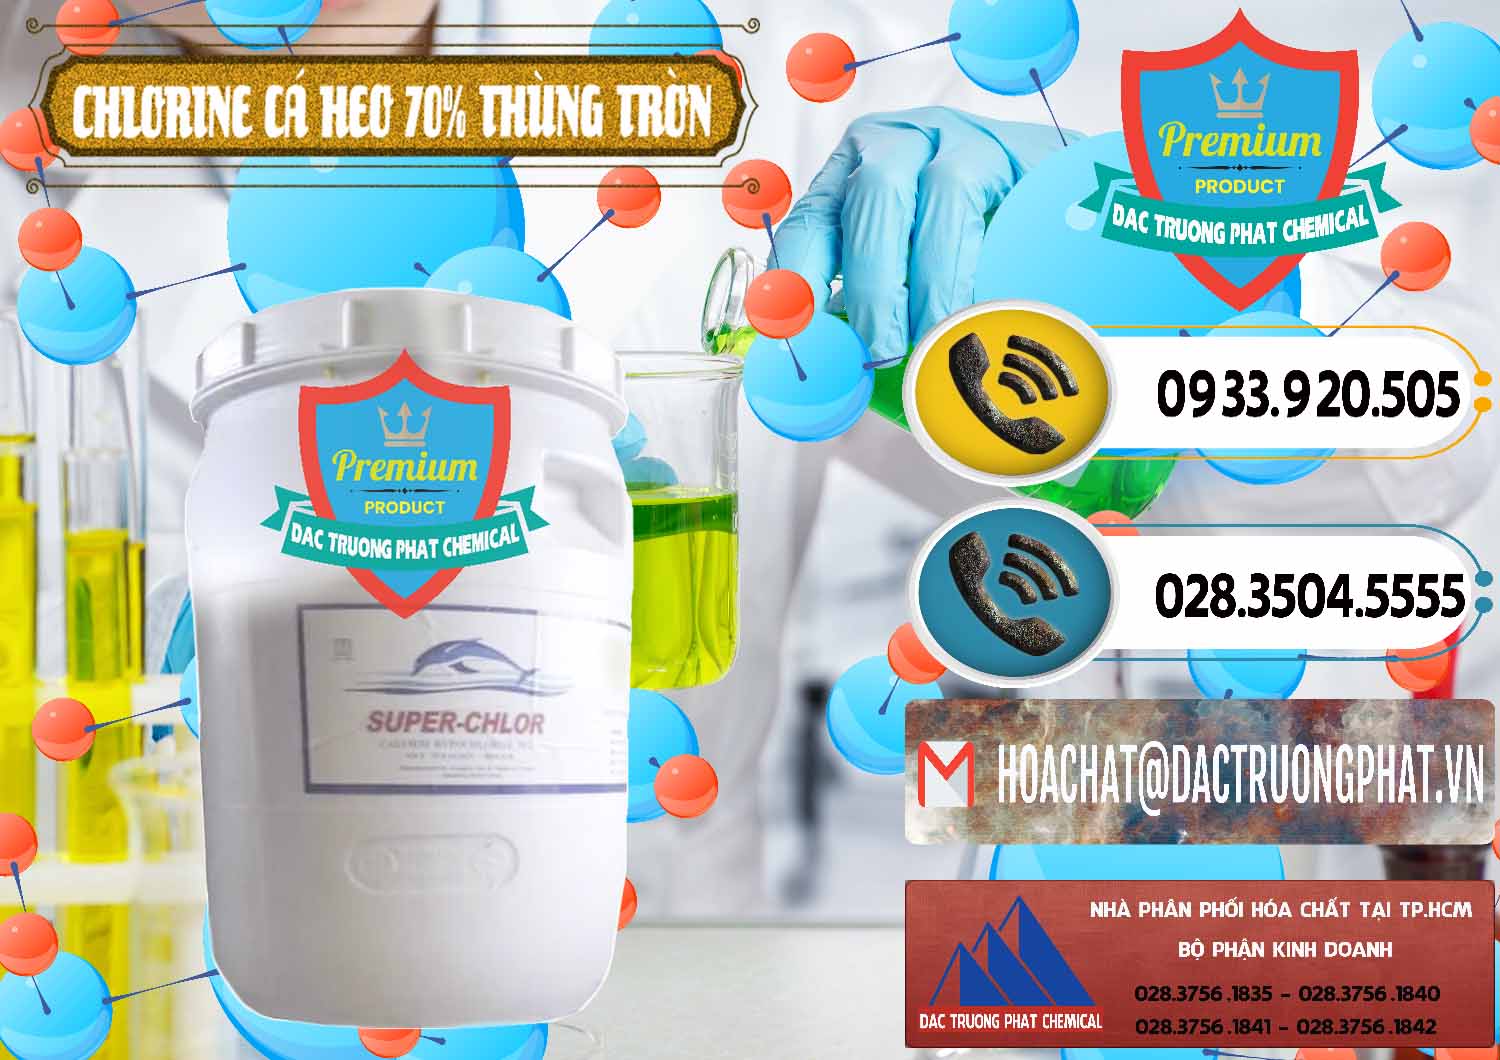 Nơi chuyên bán _ cung cấp Clorin - Chlorine Cá Heo 70% Super Chlor Thùng Tròn Nắp Trắng Trung Quốc China - 0239 - Nơi chuyên cung ứng _ phân phối hóa chất tại TP.HCM - hoachatdetnhuom.vn